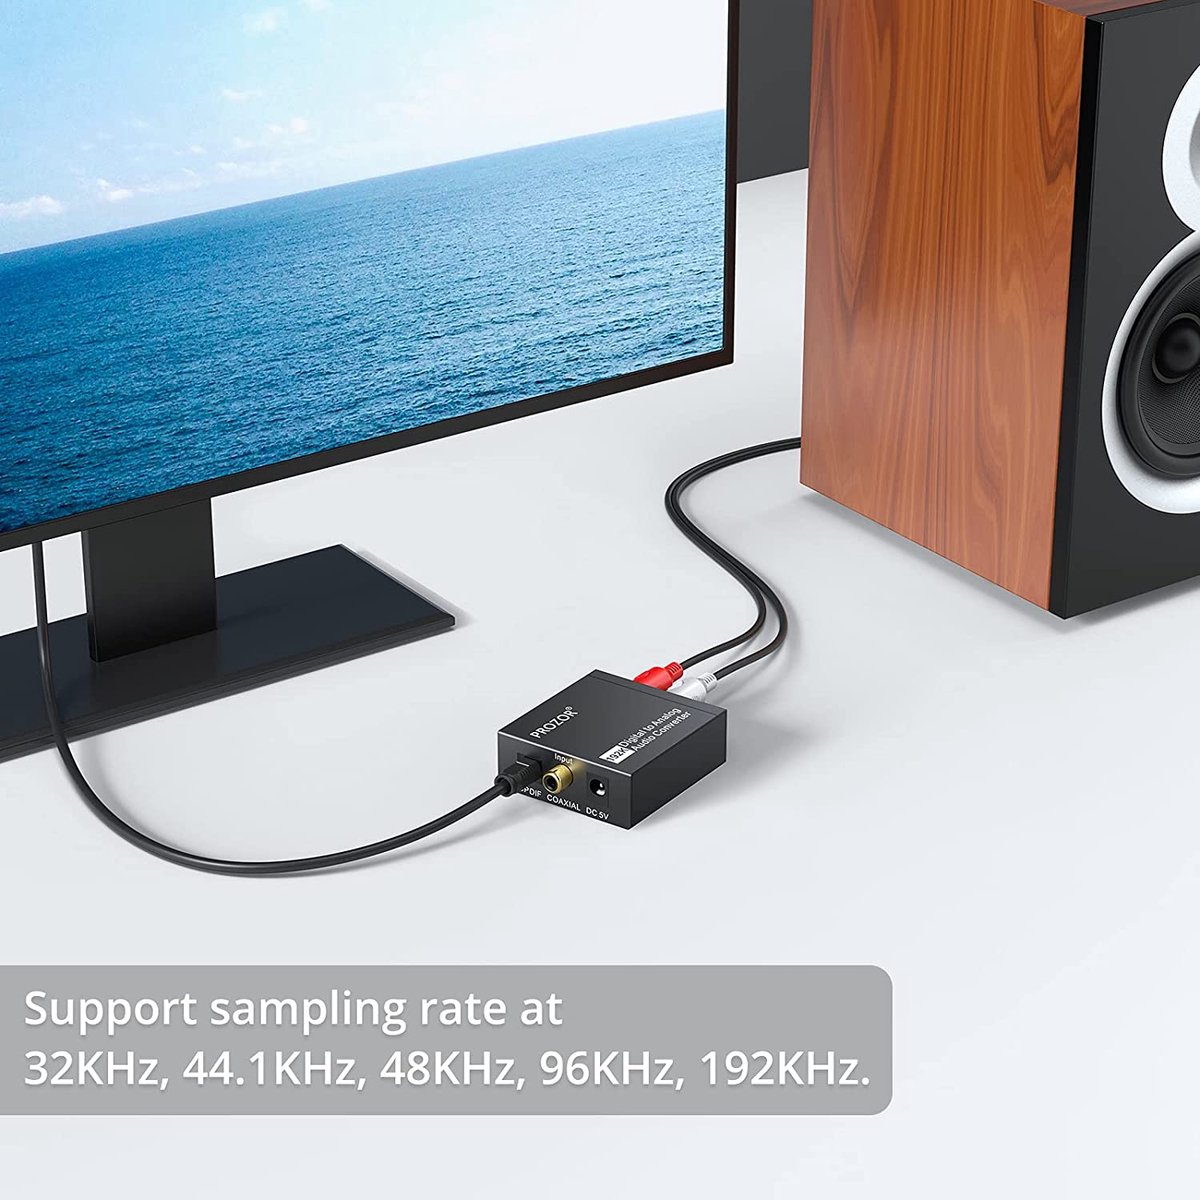 Acheter Convertisseur Audio numérique vers analogique, Jack 3.5mm, canal  optique droit gauche pour HDTV